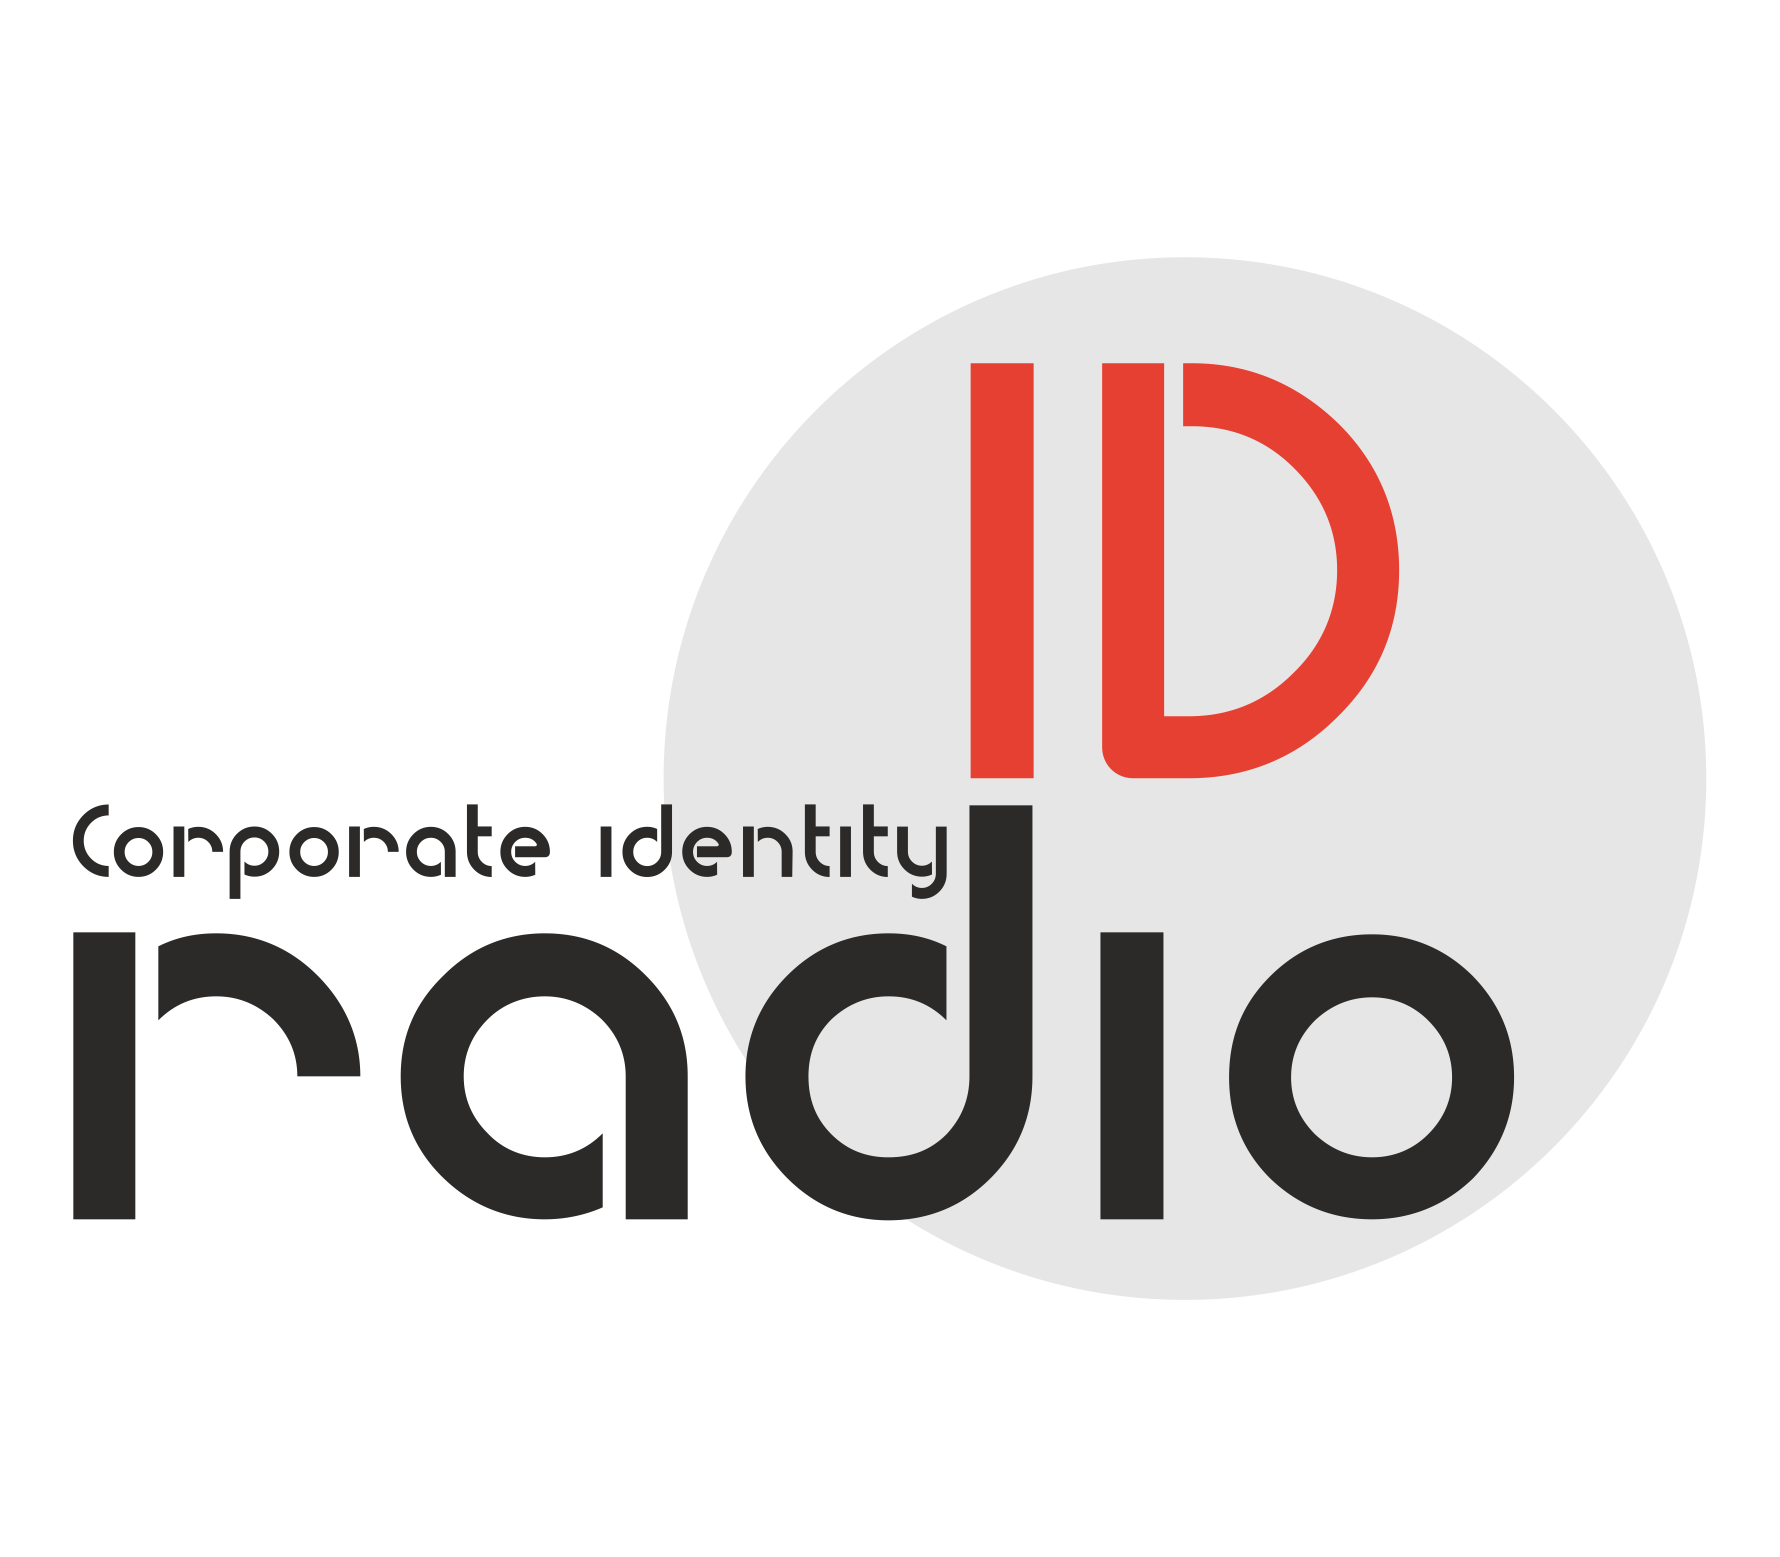 ID Radio